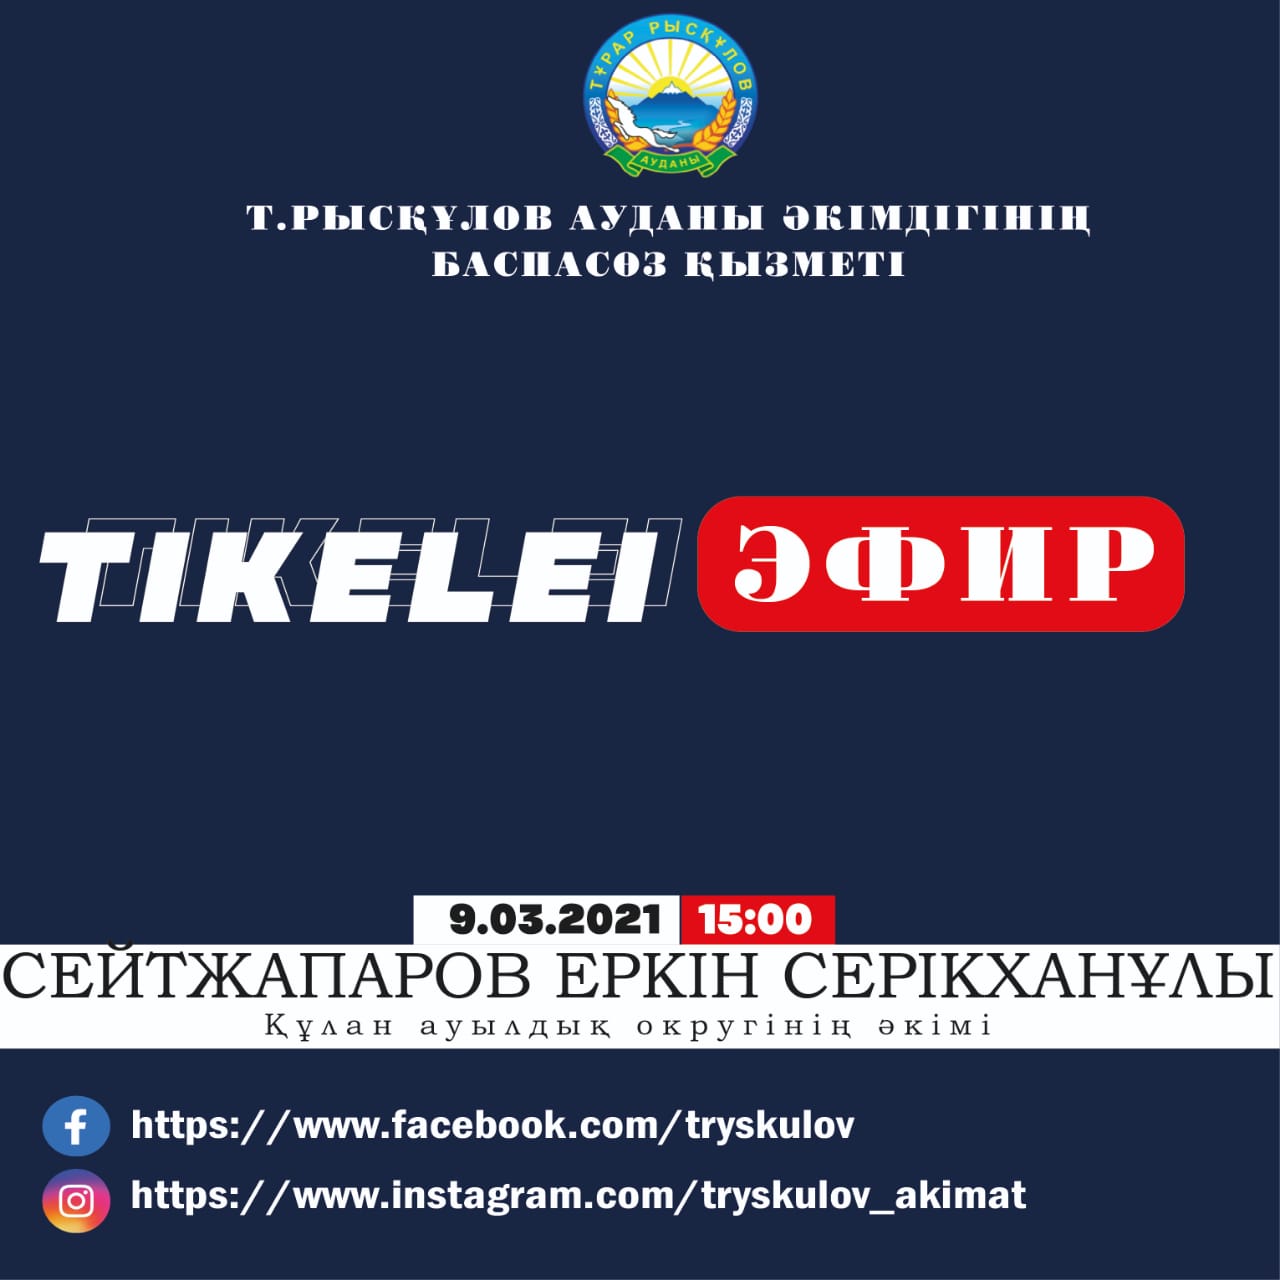 Сегодня в 15: 00 часов на страницах социальной сети пресс-службы акимата района Т. Рыскулова состоится прямой эфир на тему: "о проделанной работе в сельском округе Кулан".